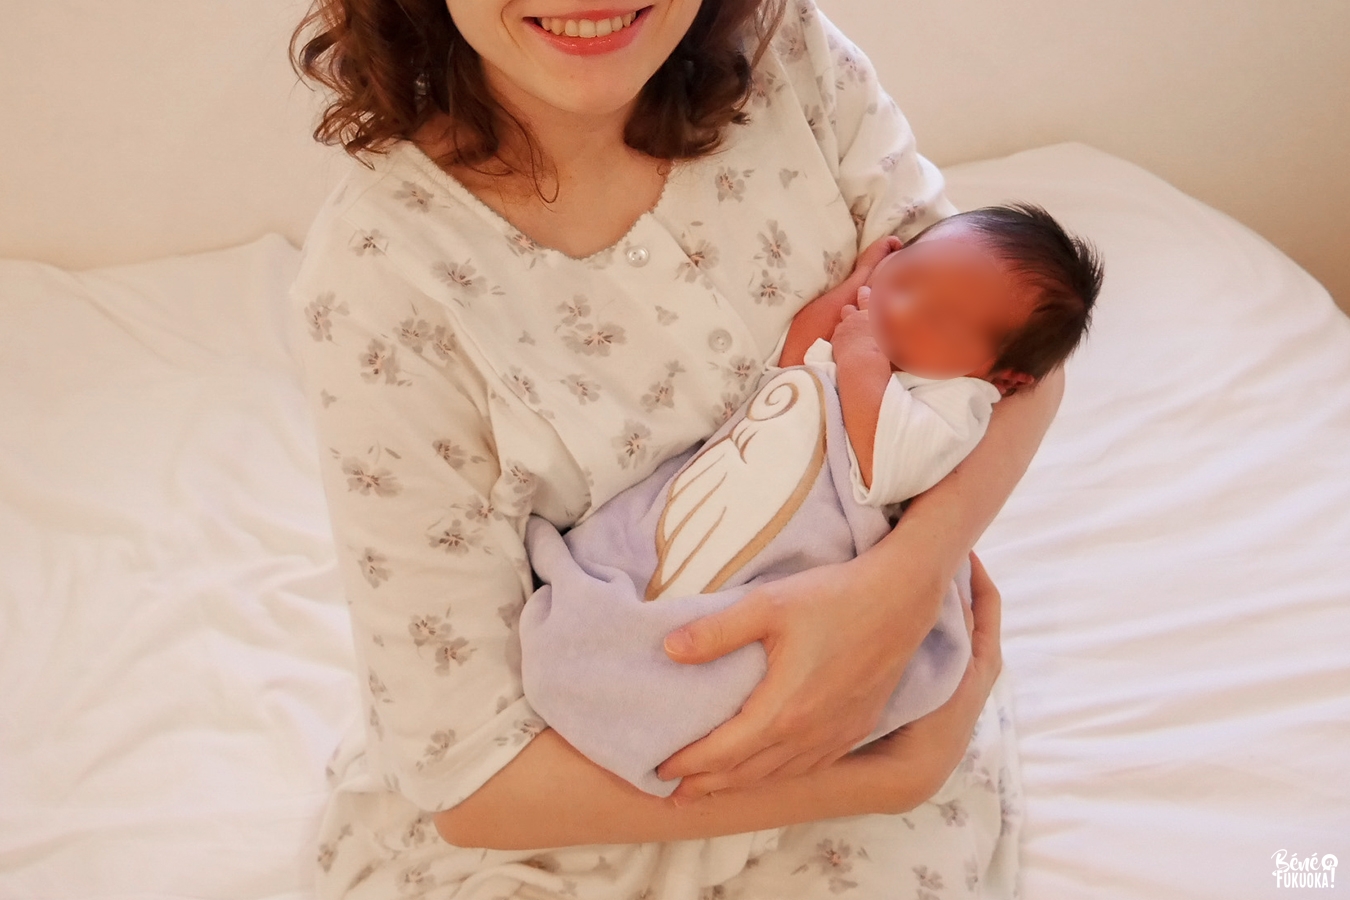 Bébé franco-japonais dans une maternité japonaise